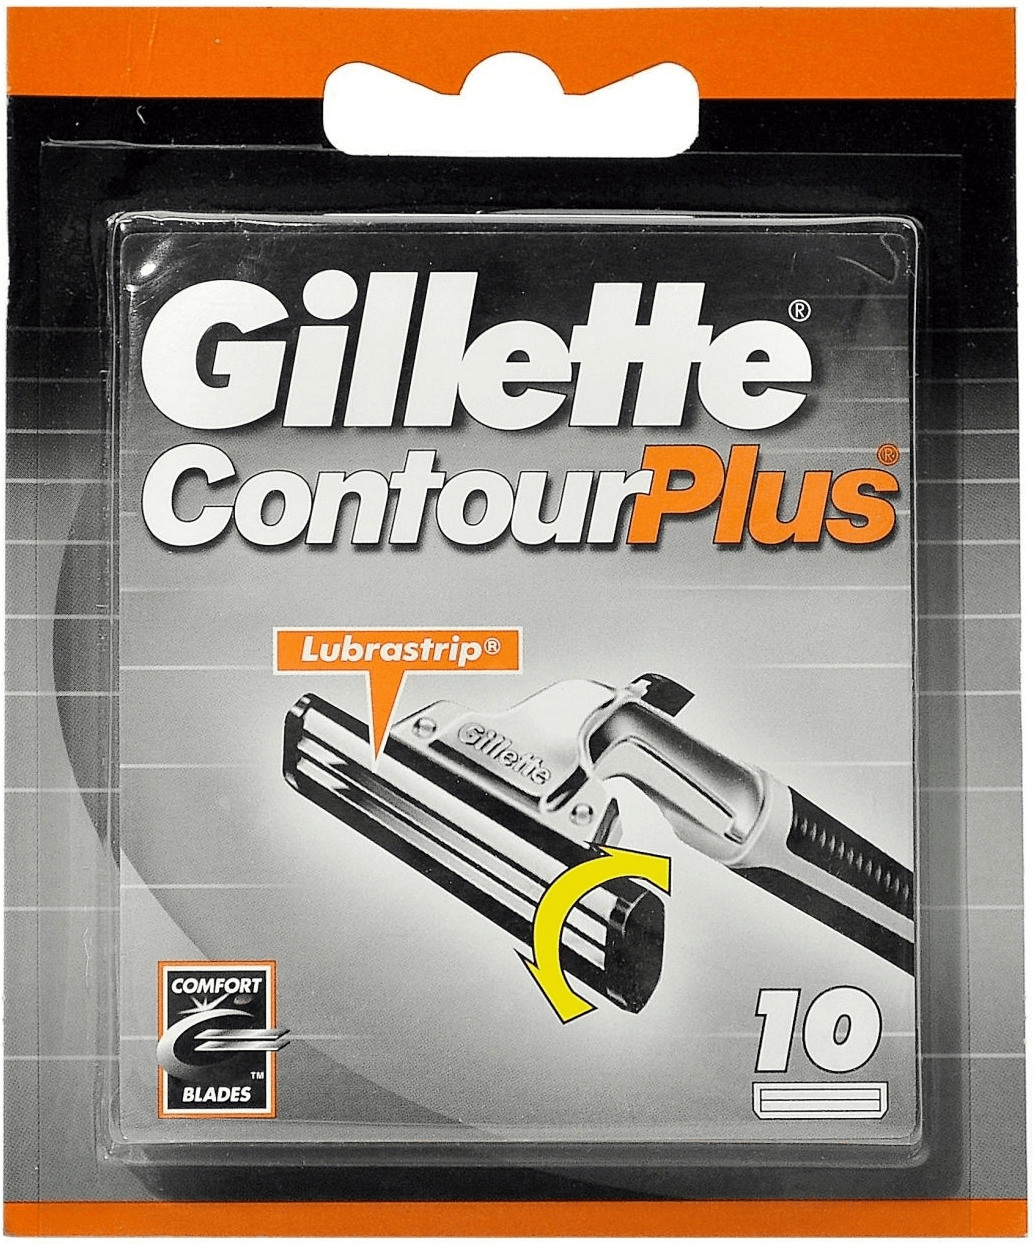 Gillette ContourPlus Lamette di ricambio a € 8,20 (oggi